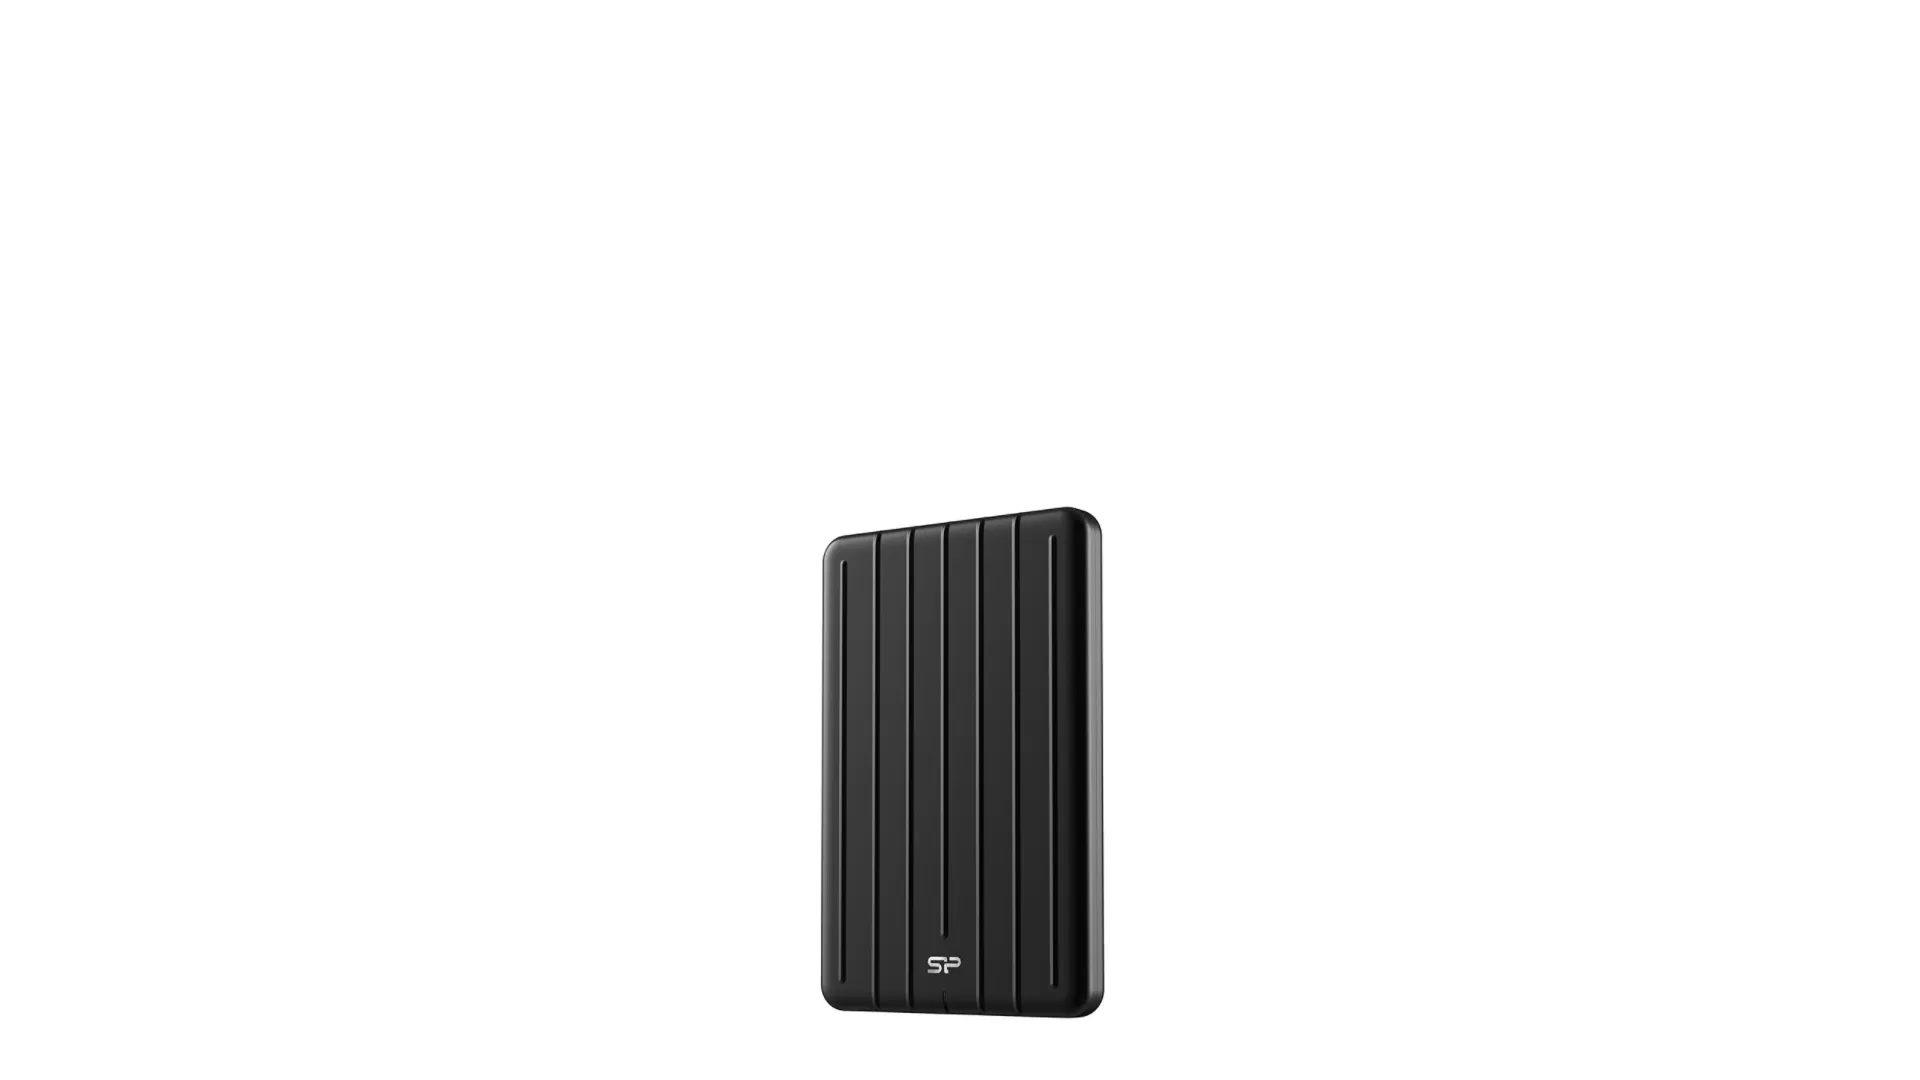 Vente SILICON POWER External SSD Bolt B75 Pro 512Go Silicon Power au meilleur prix - visuel 2